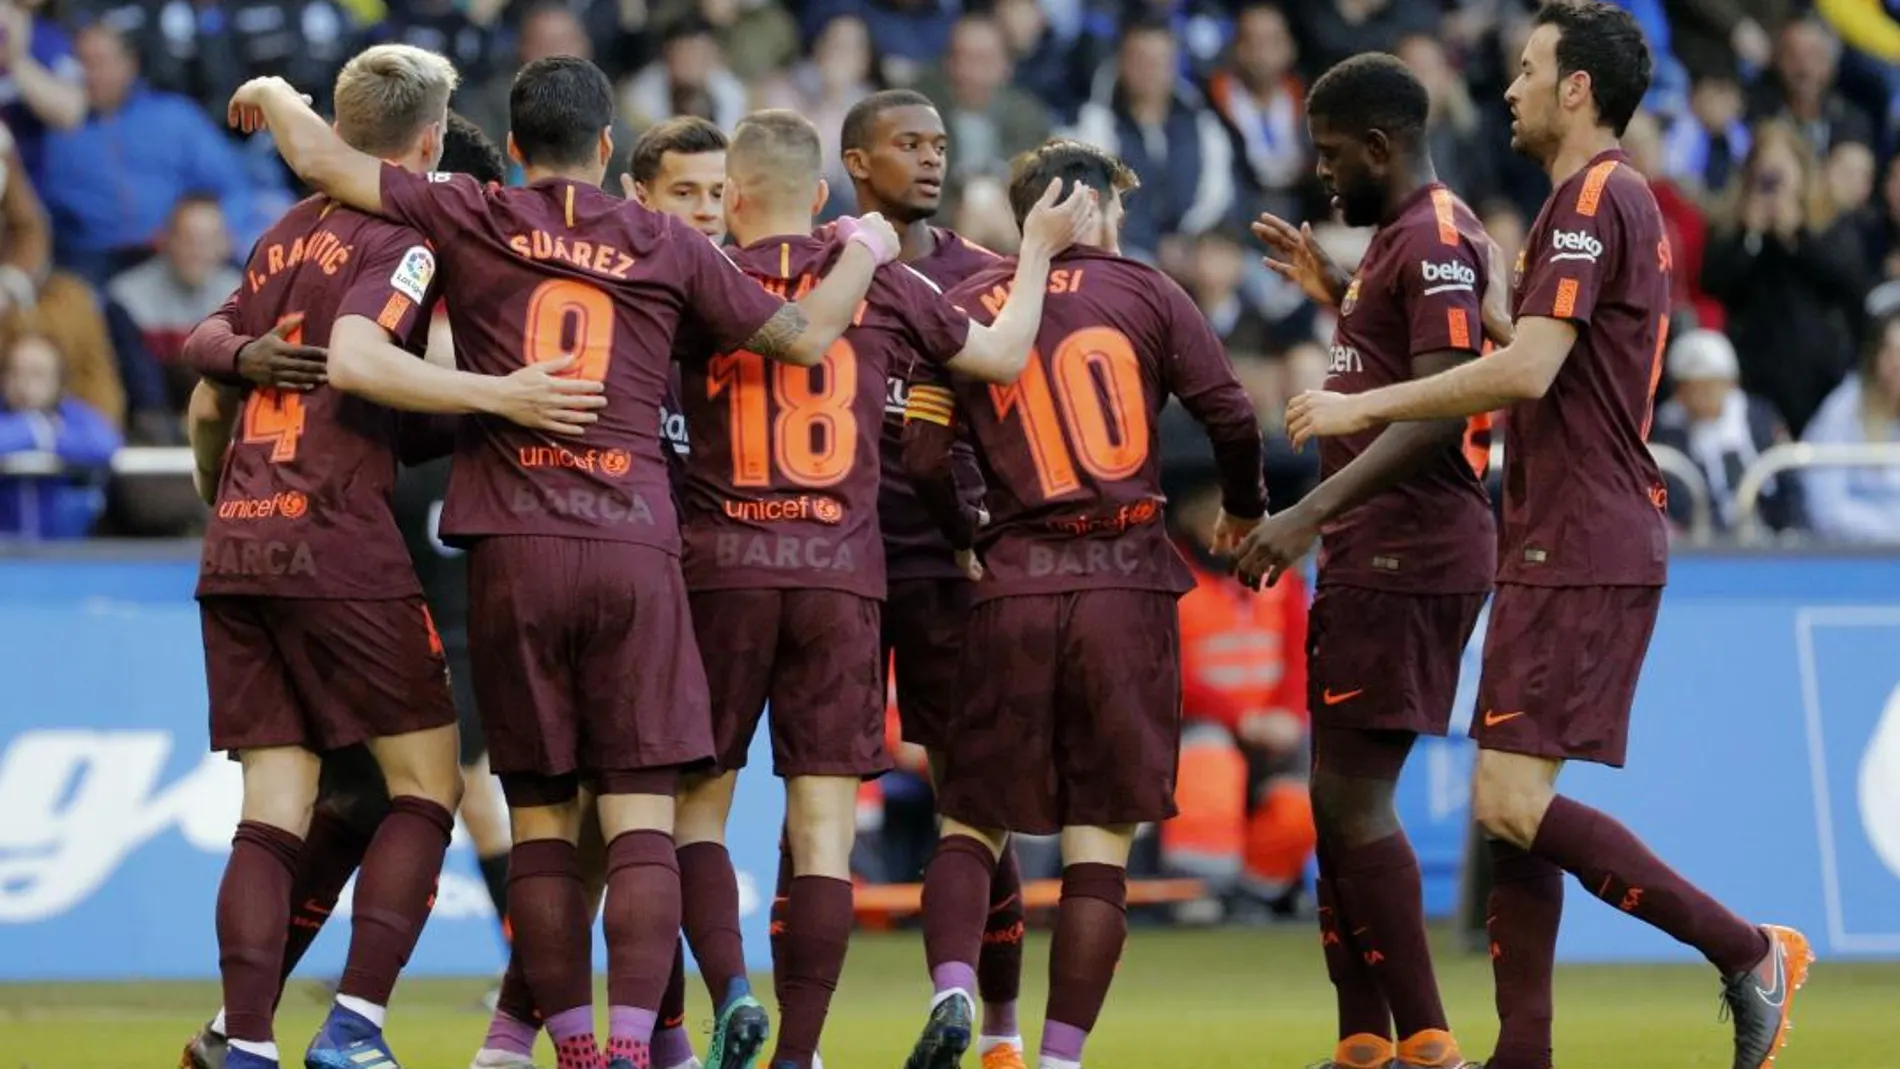 Los jugadores del FC Barcelona celebran tras marcar ante el Deportivo de La Coruña. EFE/Lavandeira jr